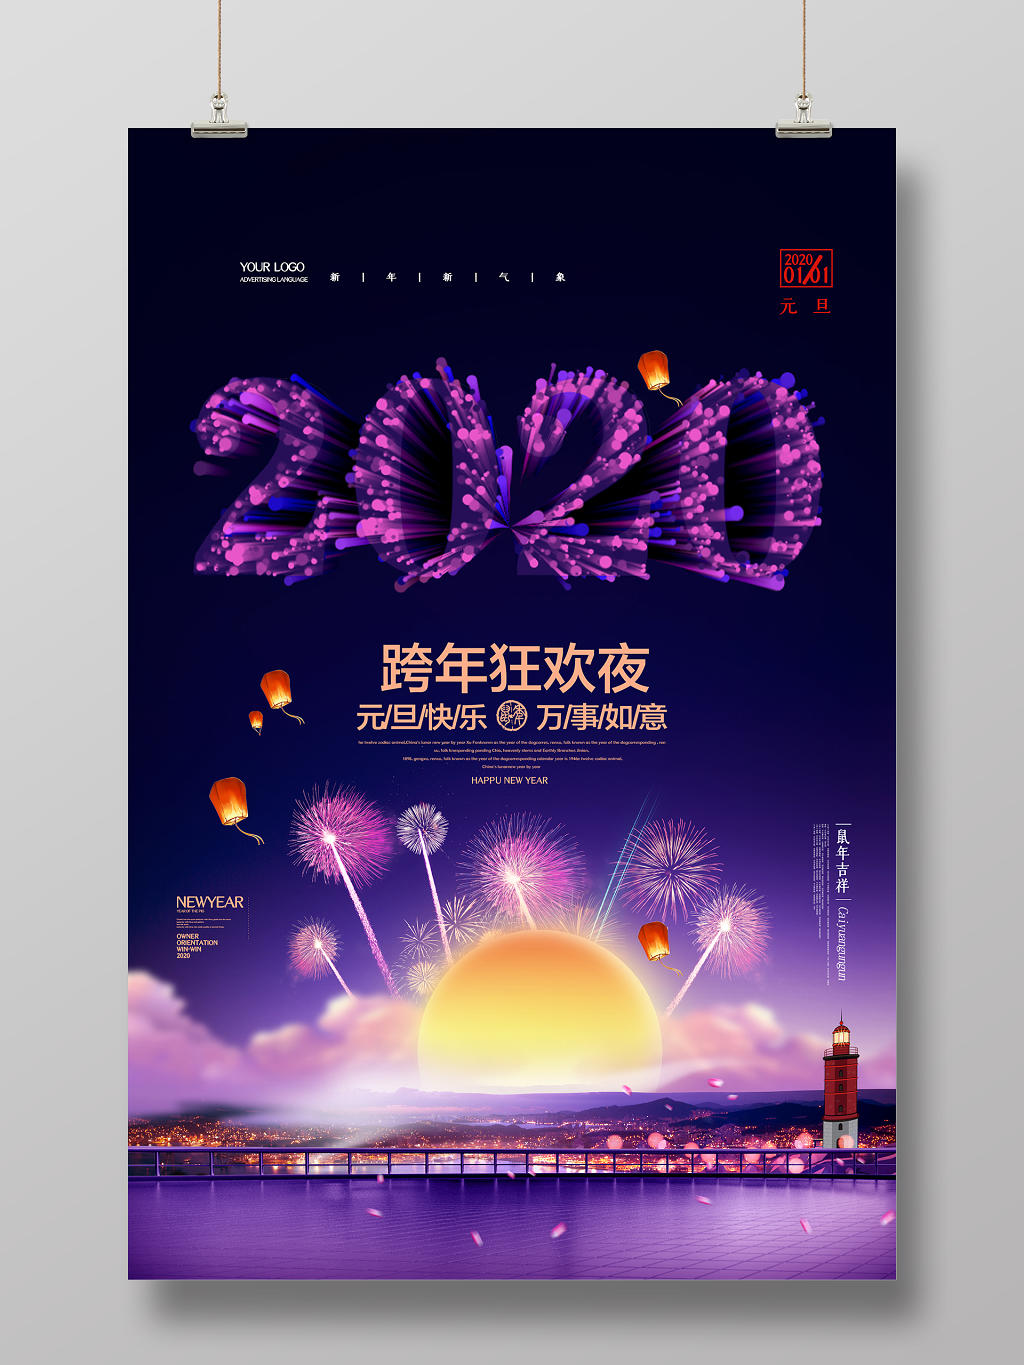 炫彩烟花2020鼠年跨年狂欢夜喜迎元旦春节海报